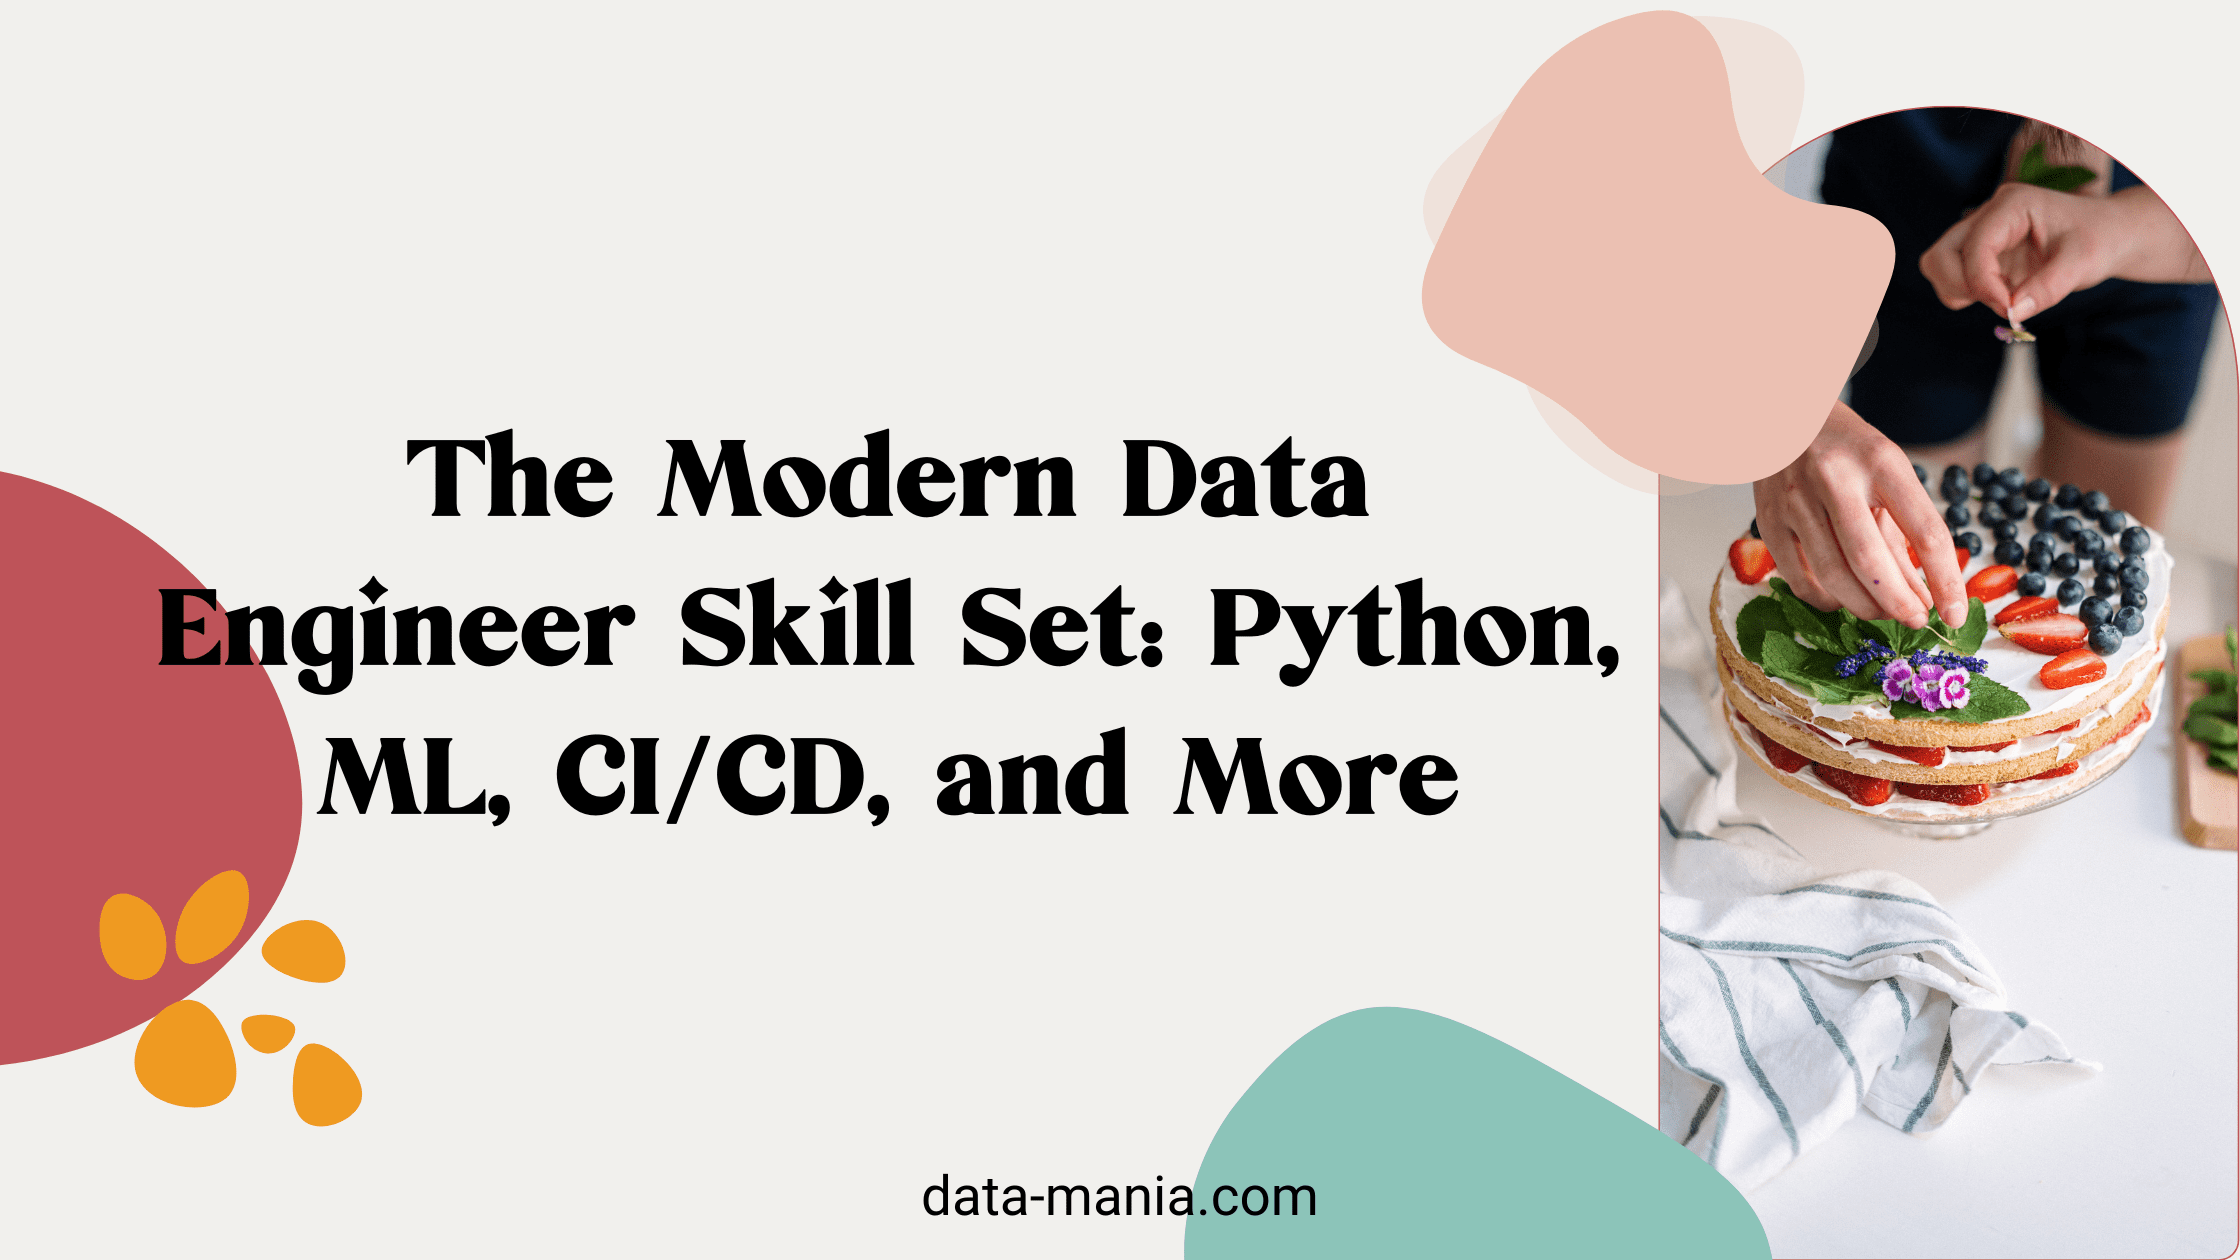 The Modern Data Engineer Skill Set - Python, ML, CICD, and More